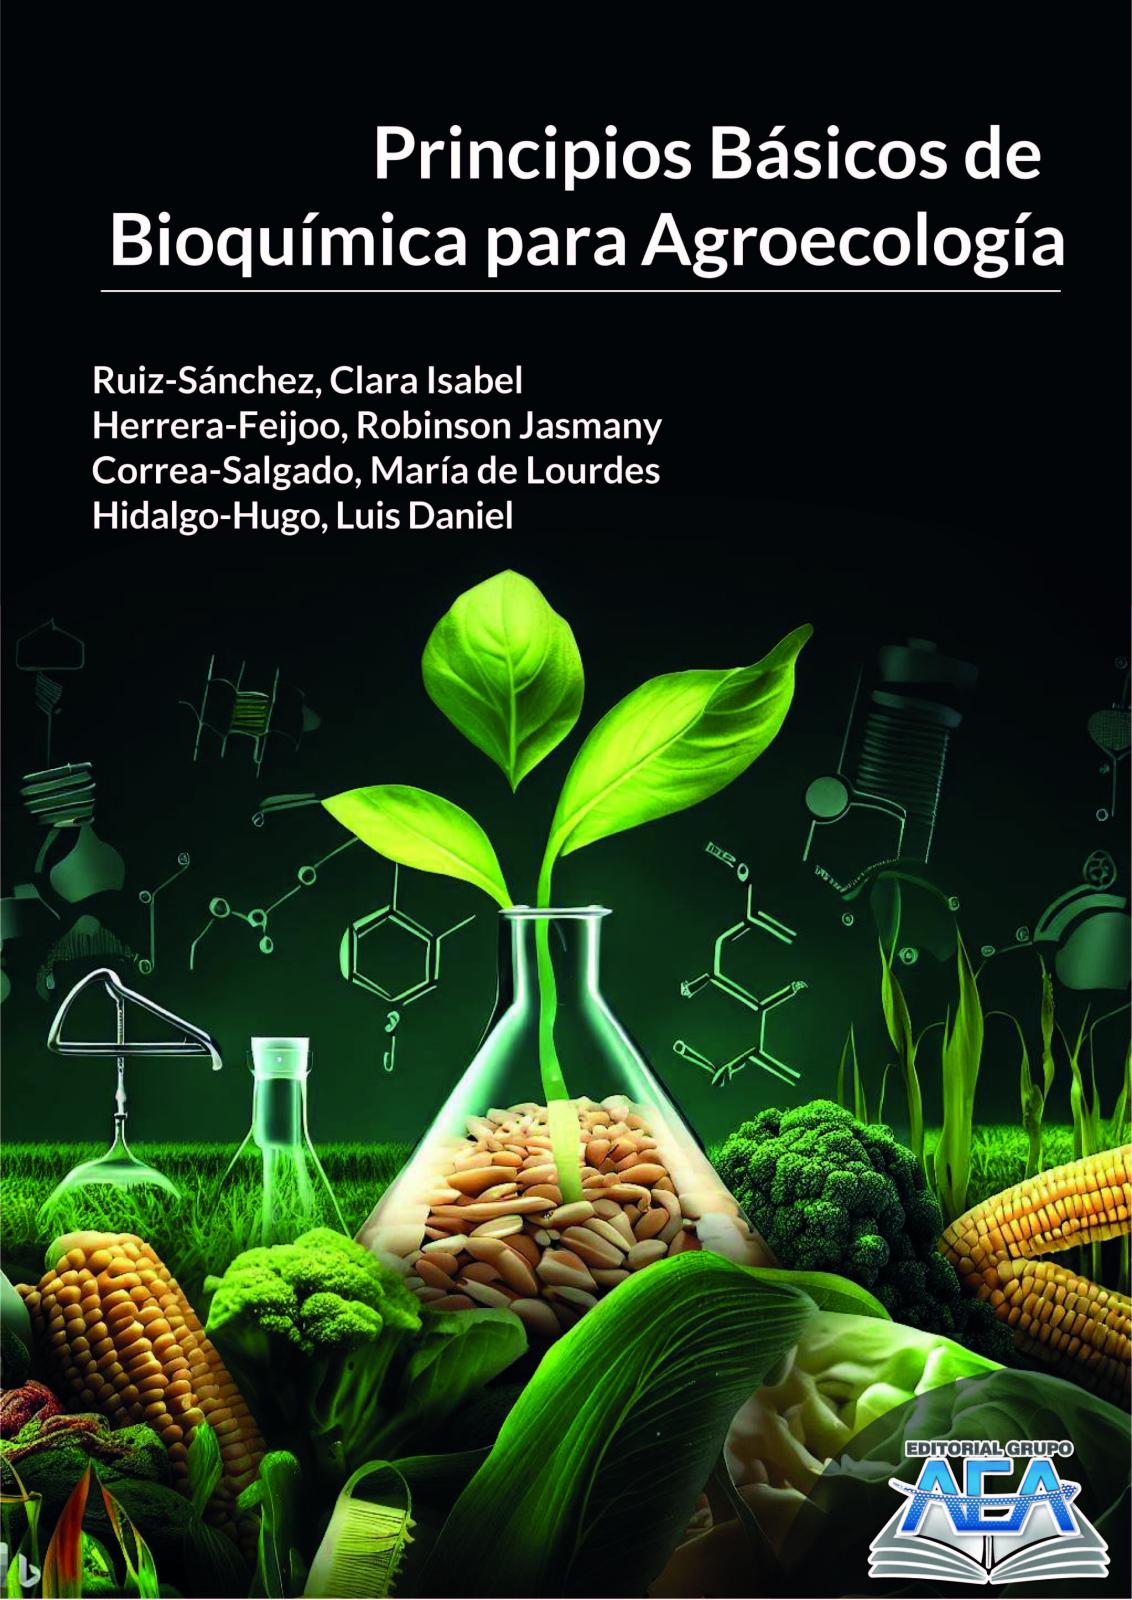 Read more about Principios Básicos de Bioquímica para Agroecología